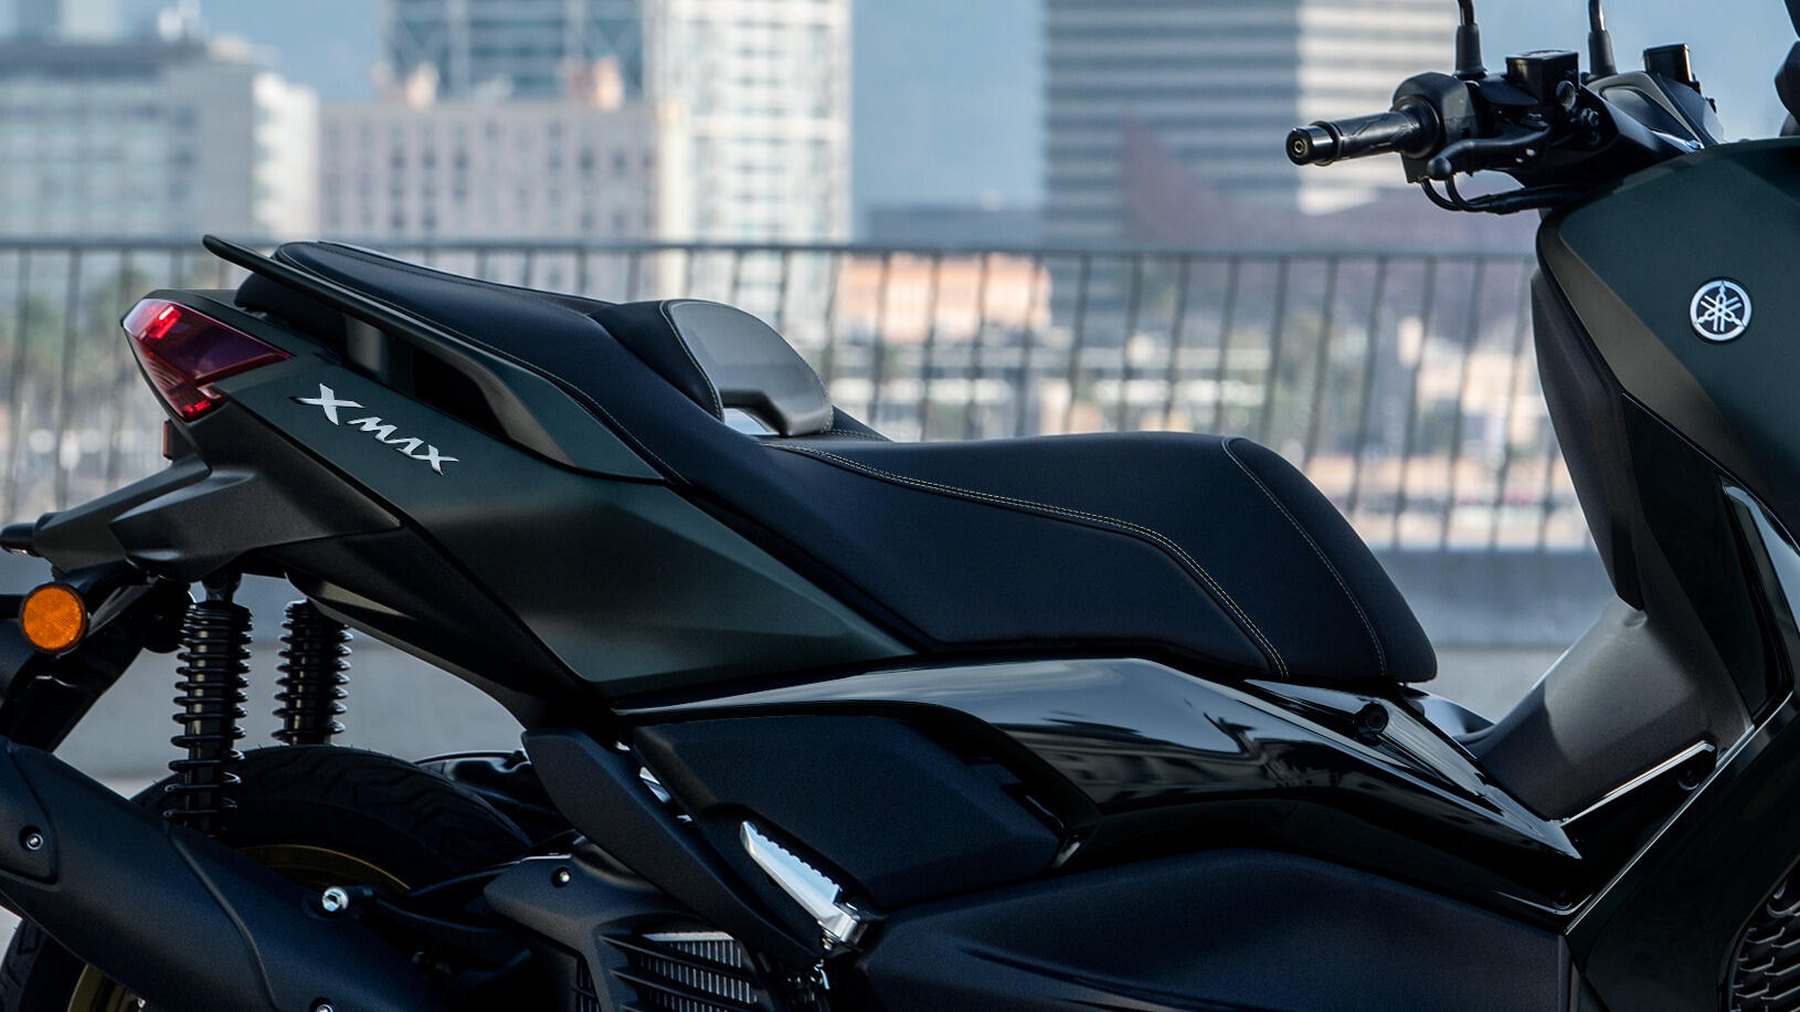 Vista lateral Yamaha X-Max 125cc destacando su diseño aerodinámico y asiento ergonómico